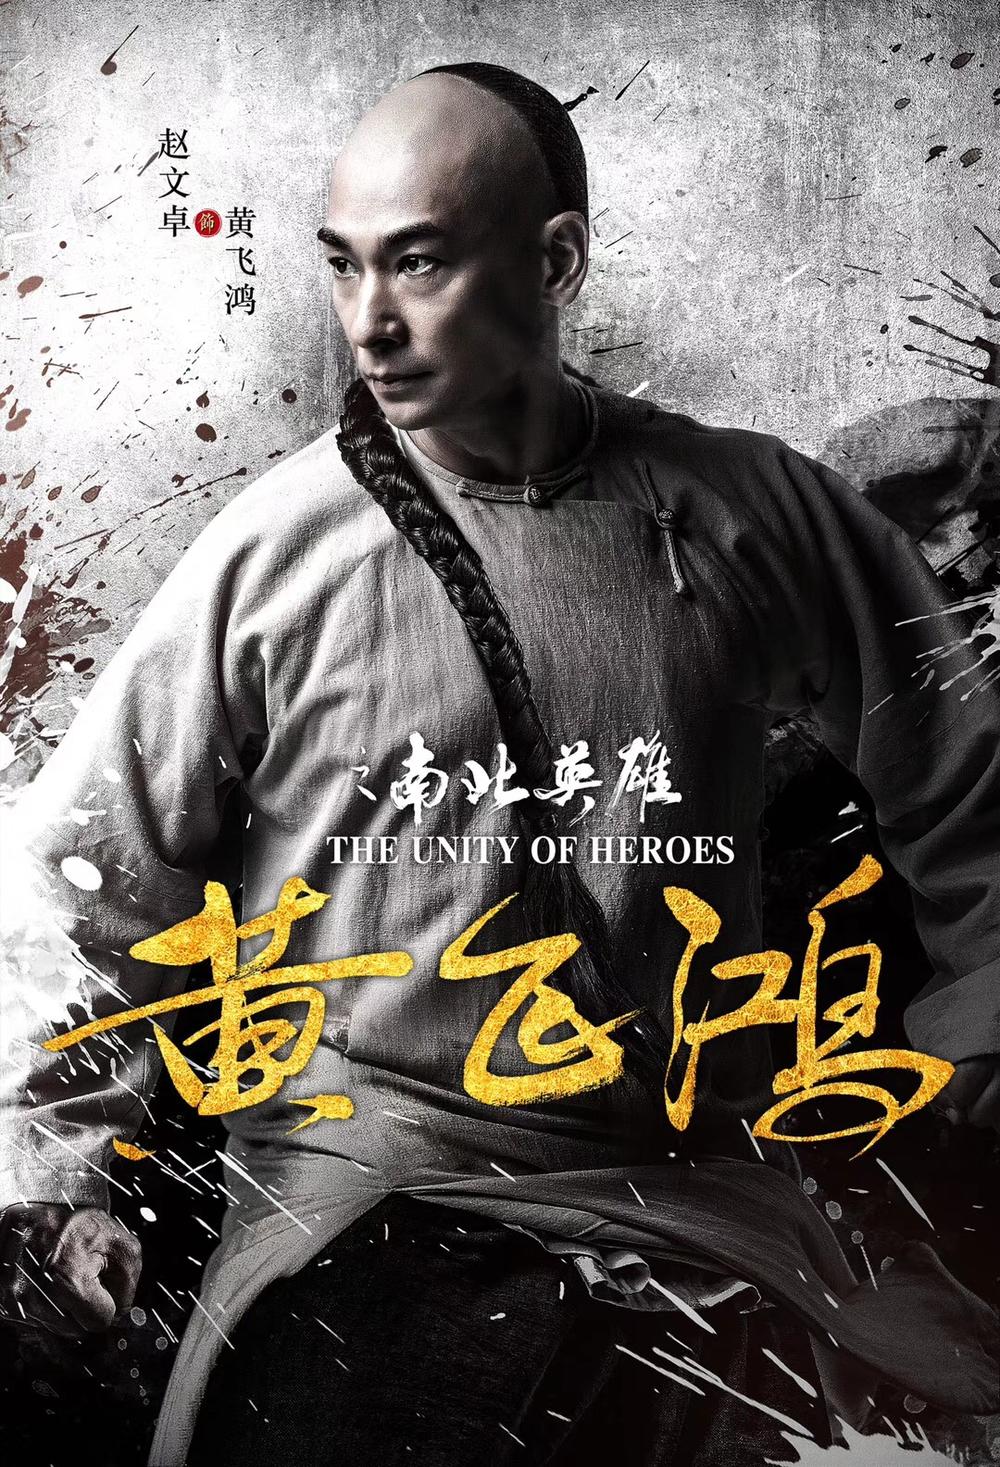 Xem Phim Hoàng Phi Hồng: Nam Bắc Anh Hùng (The Unity Of Heroes)